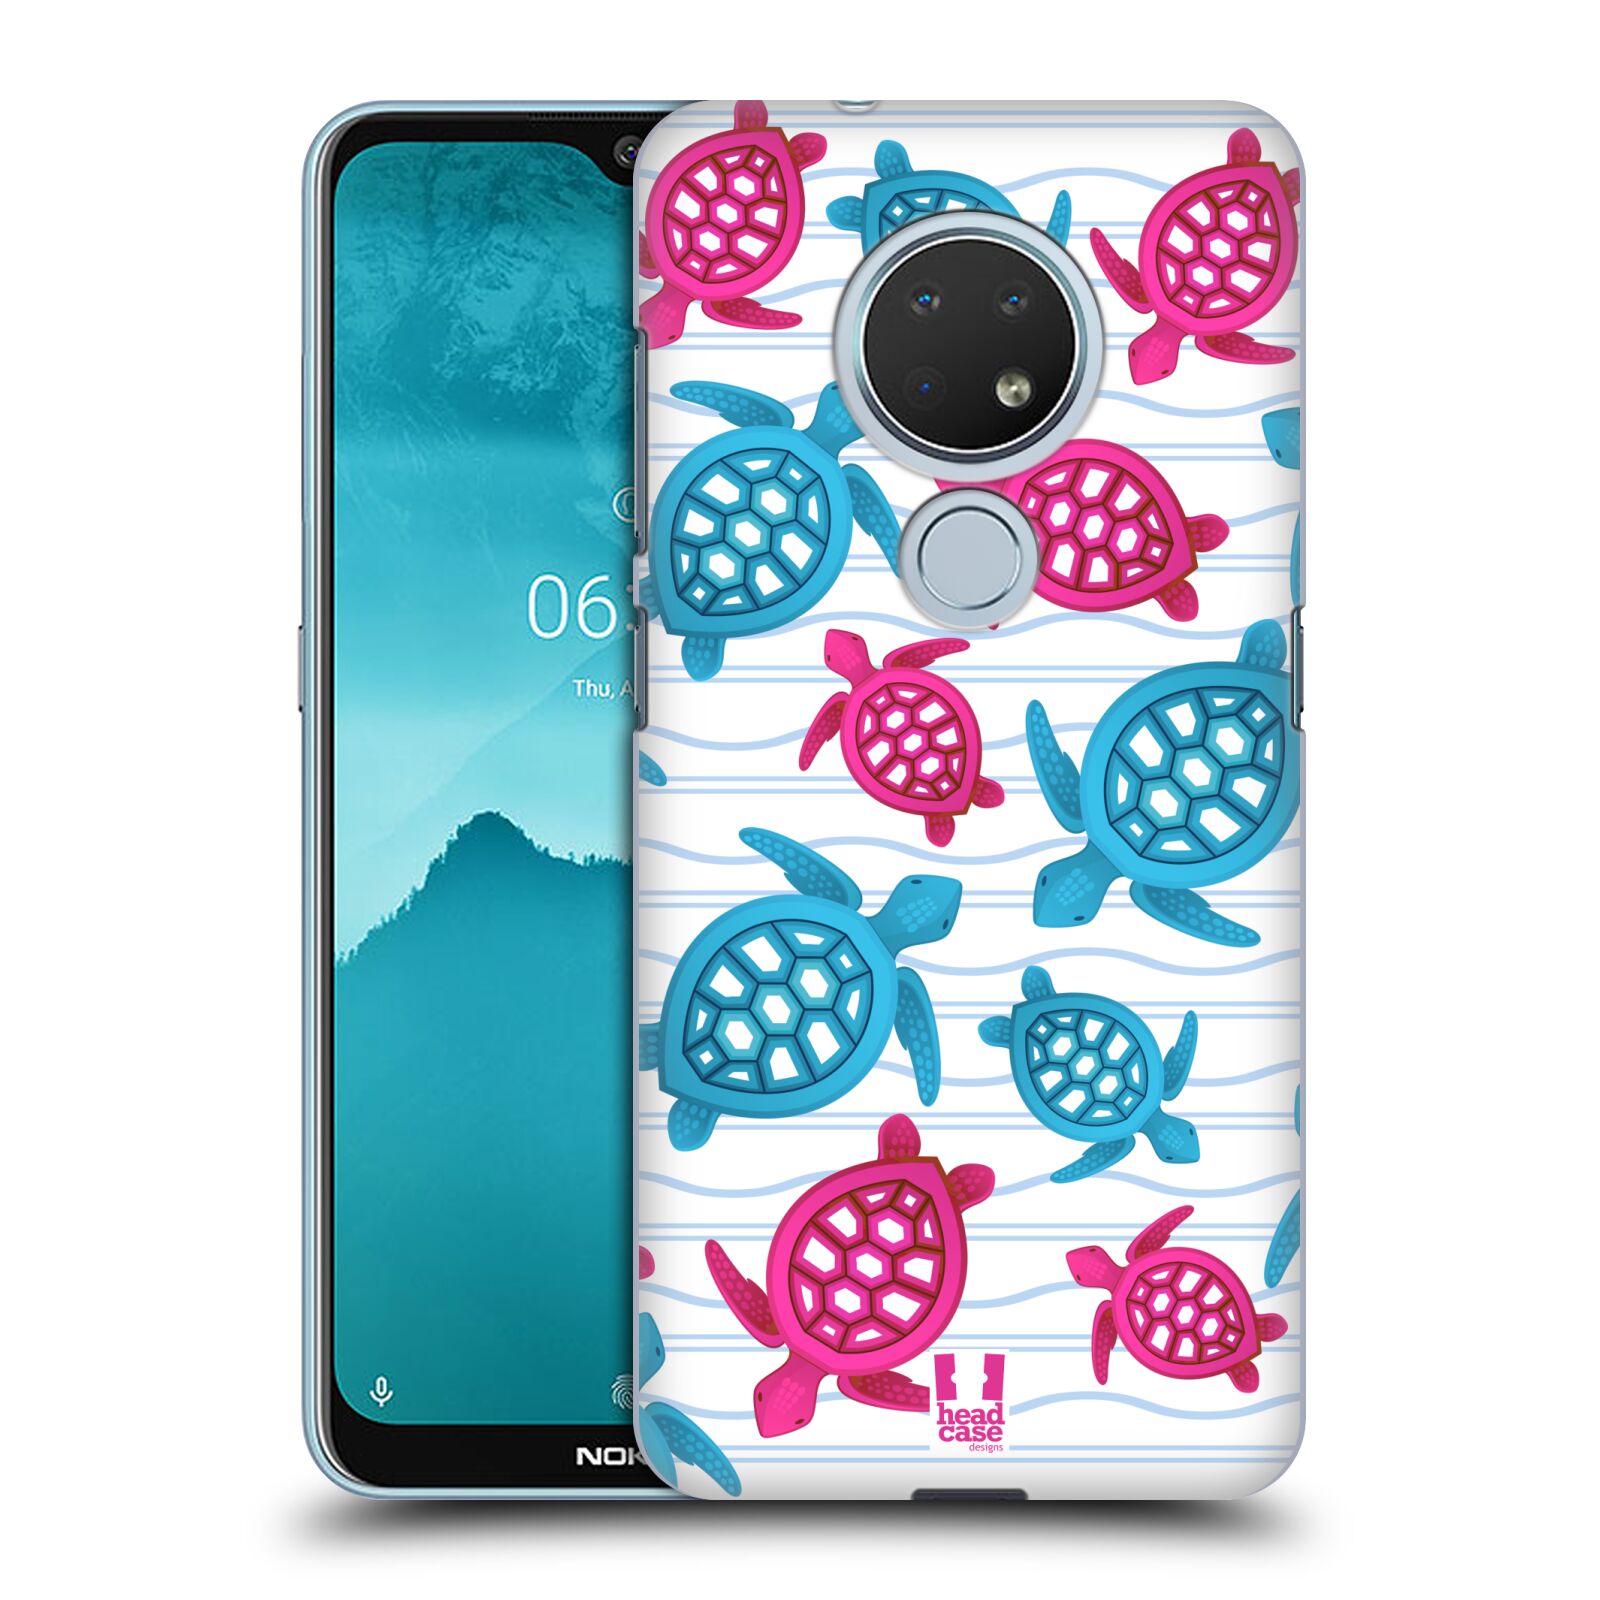 Pouzdro na mobil Nokia 6.2 - HEAD CASE - vzor mořský živočich želva modrá a růžová